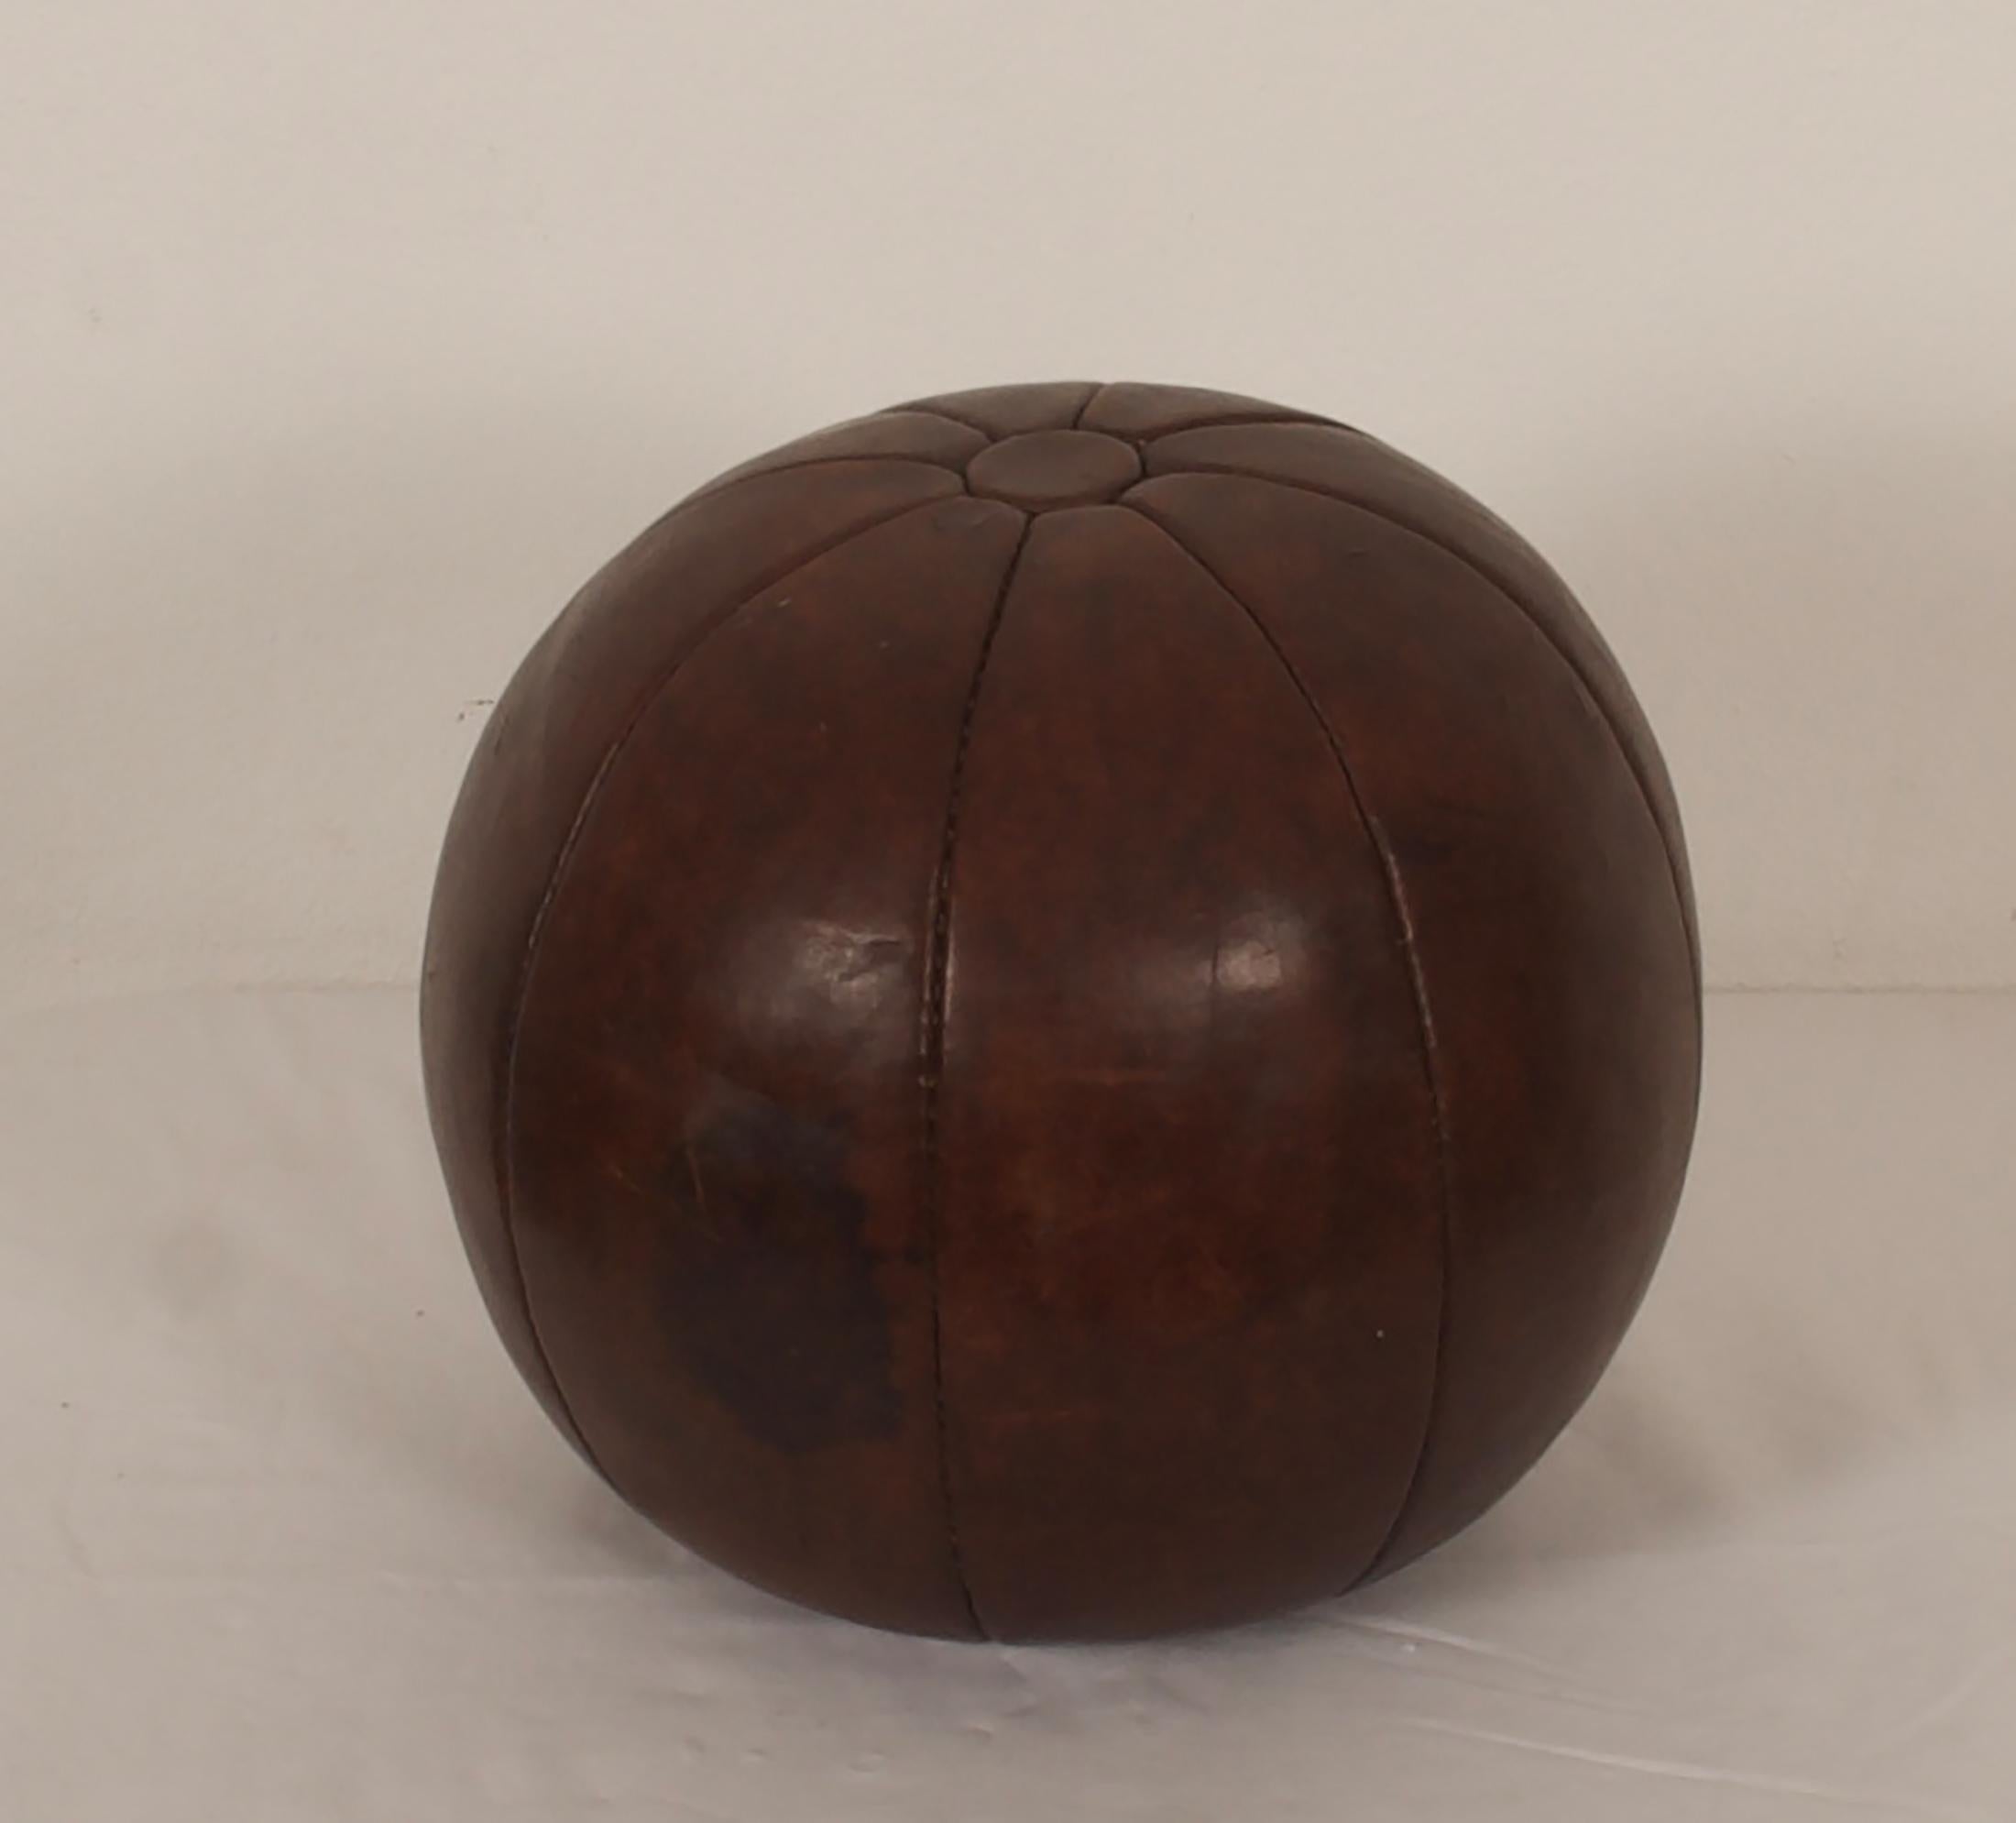 Original patinierter Medizinball aus Leder aus den 1950er Jahren.